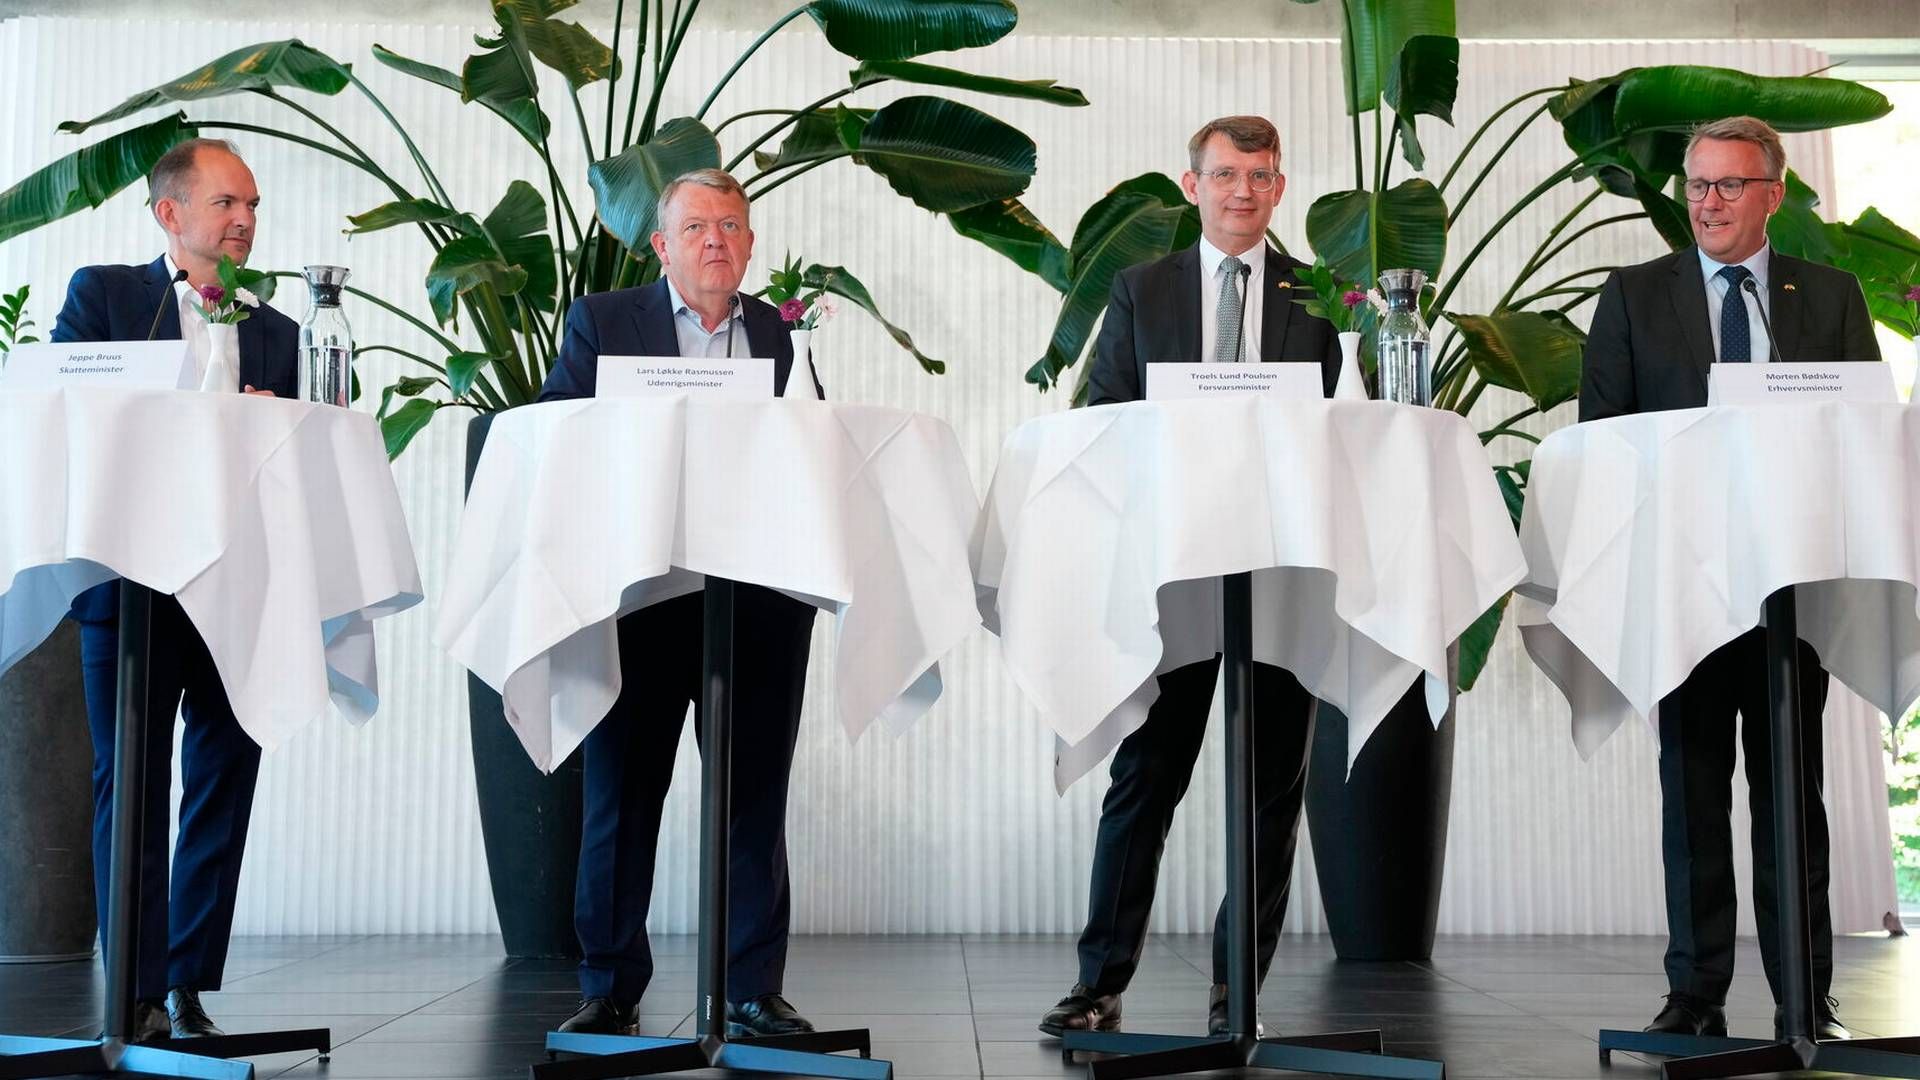 Regeringen fremlagde erhvervsudspillet på et pressemøde hos medicinalselskabet Lundbeck i Valby.